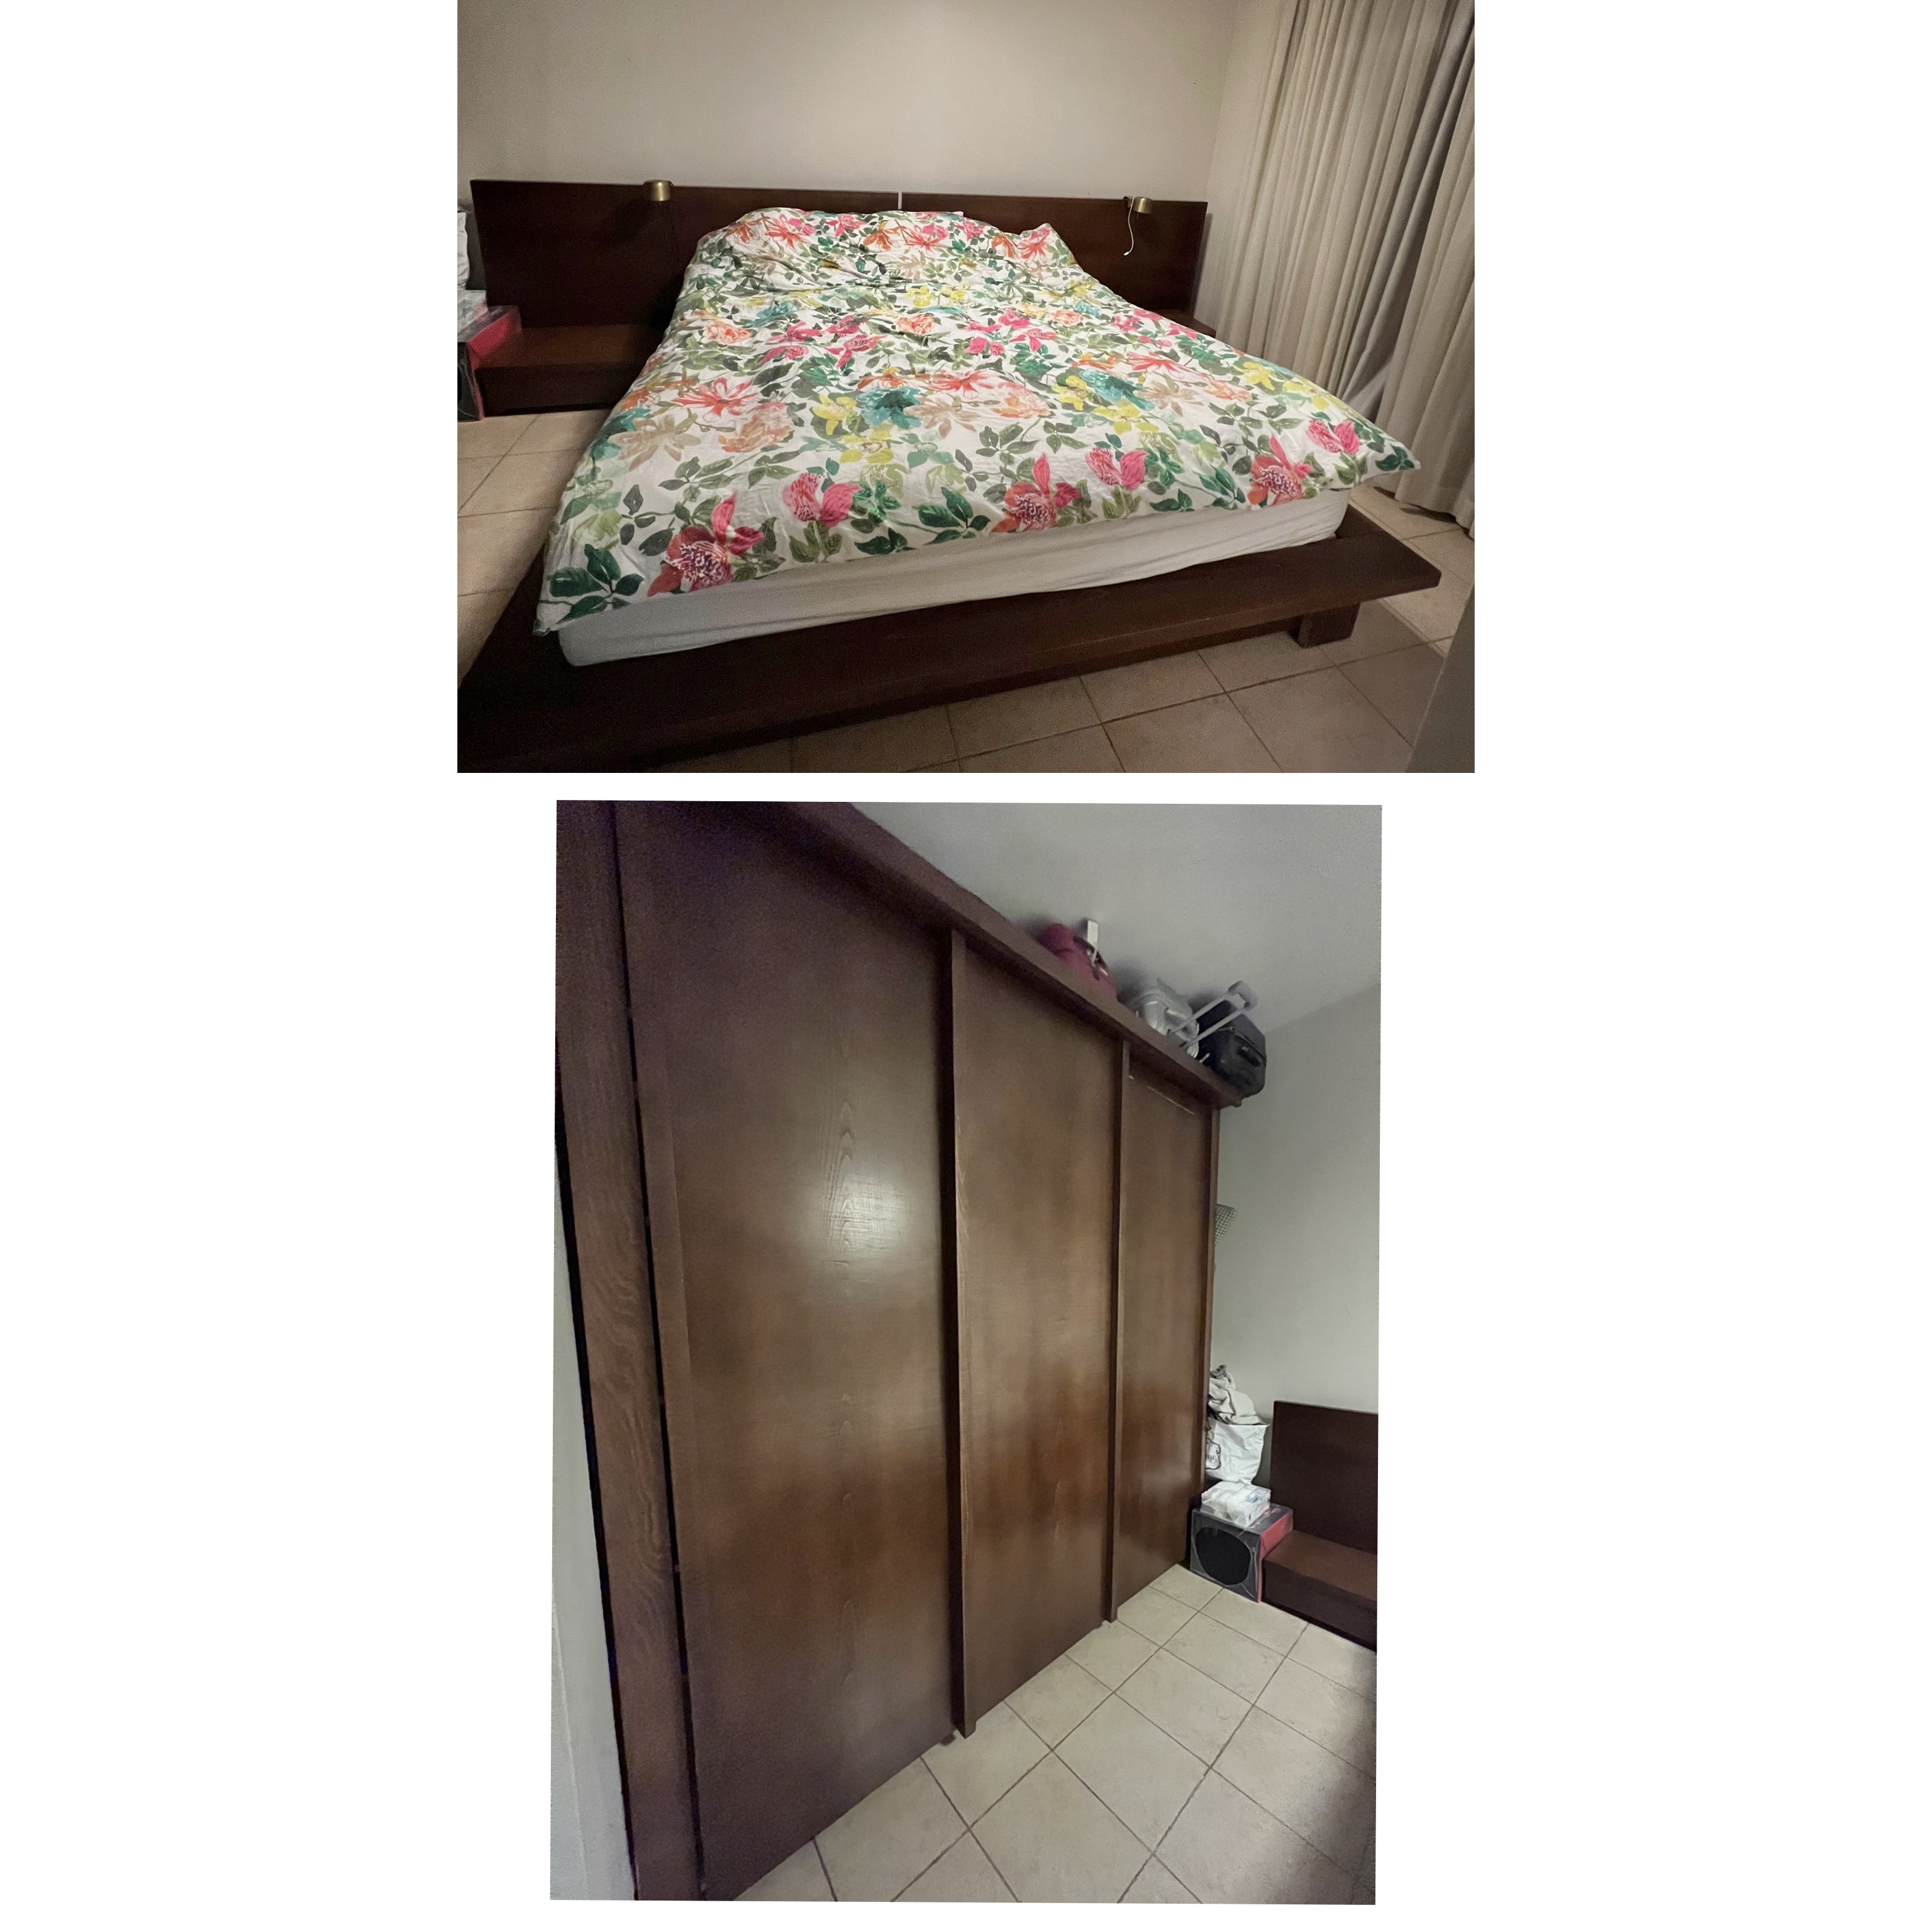 תמונה 2 ,סט ארון ומיטה ענקיים לחדר שינה למכירה ביבנאל ריהוט  חדרי שינה